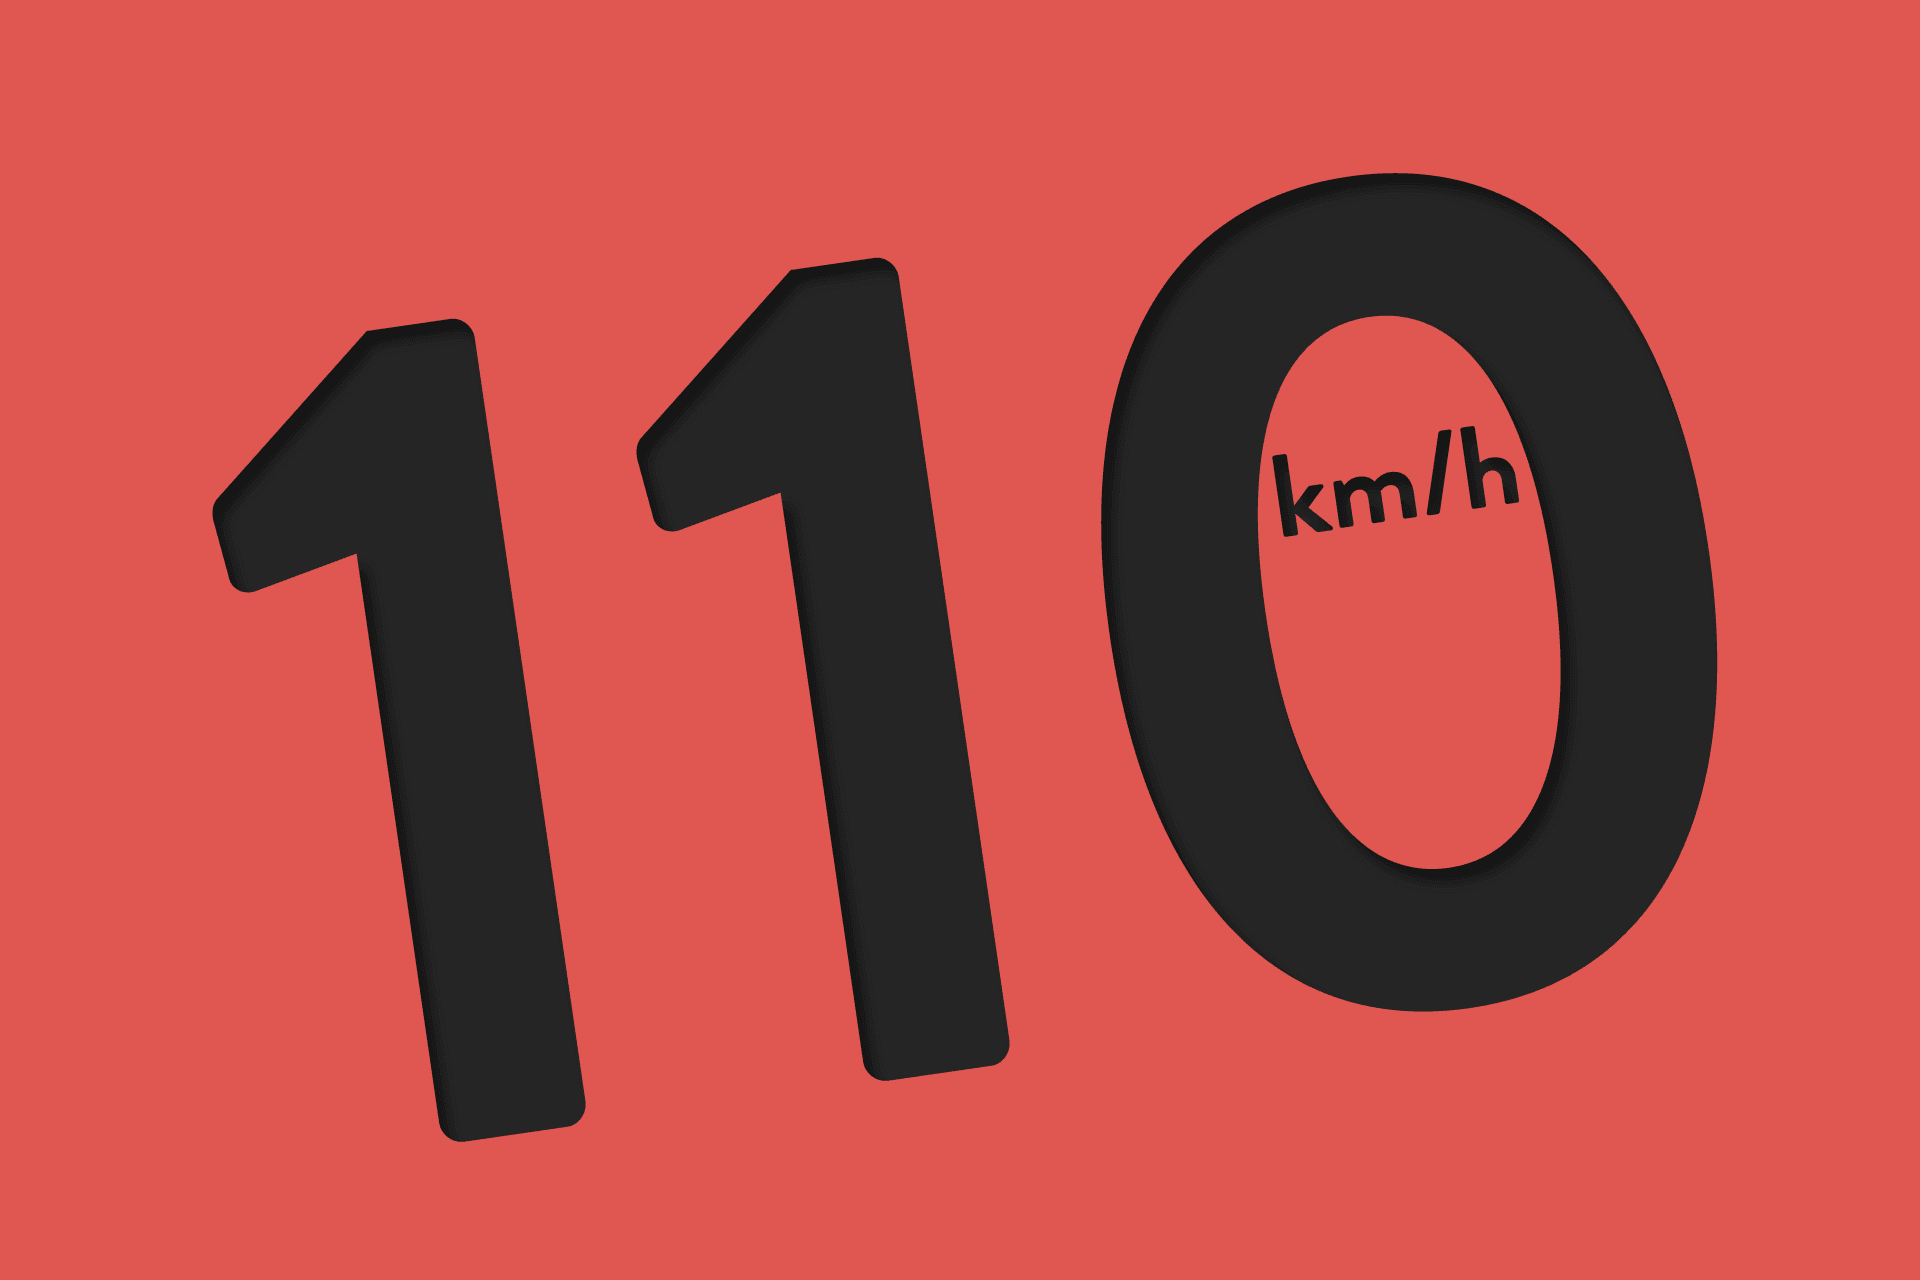 110 km/h